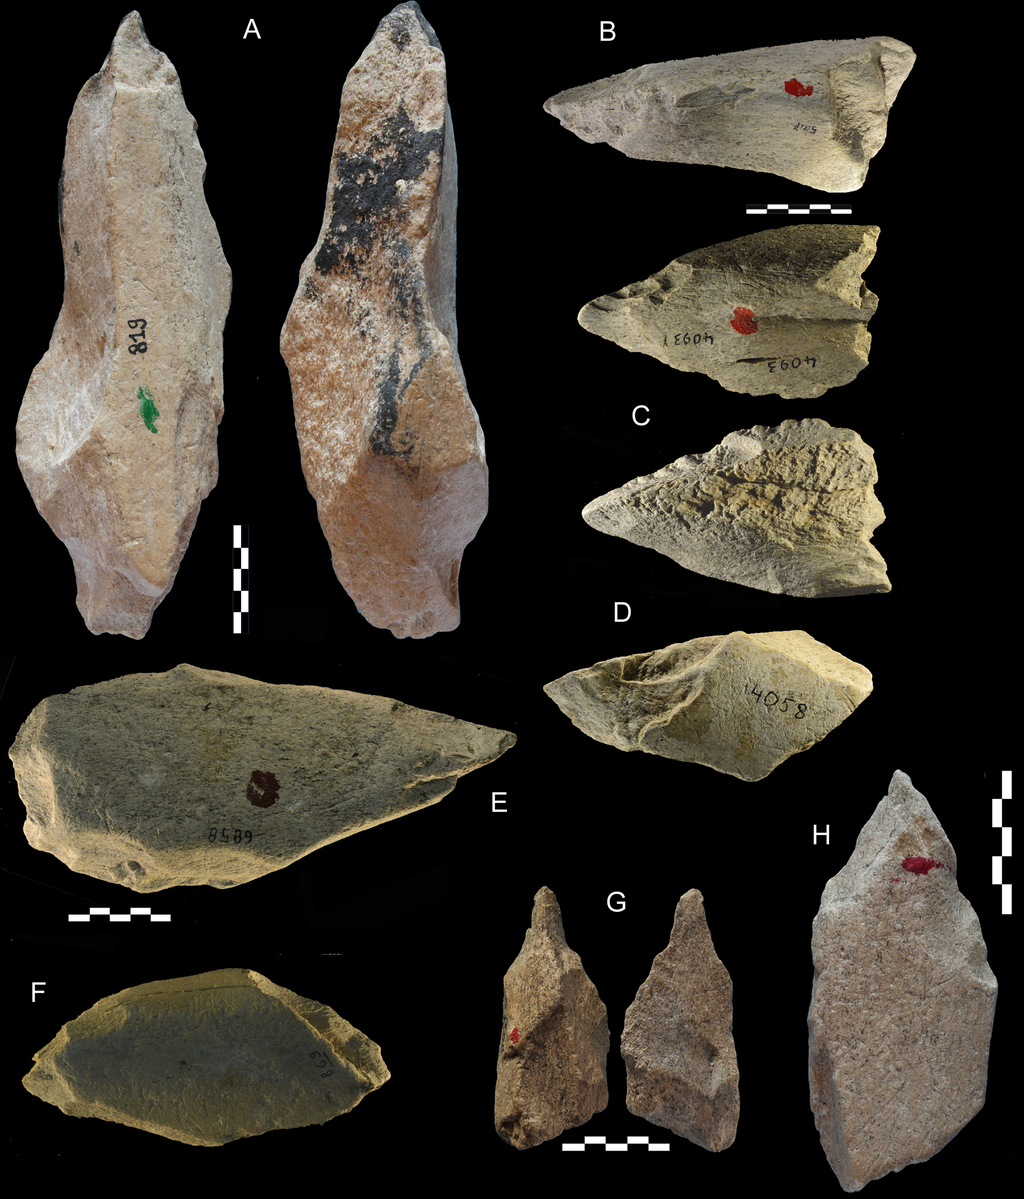 Ferramentas de ossos de elefante mostram que os Neandertais eram habilidosos